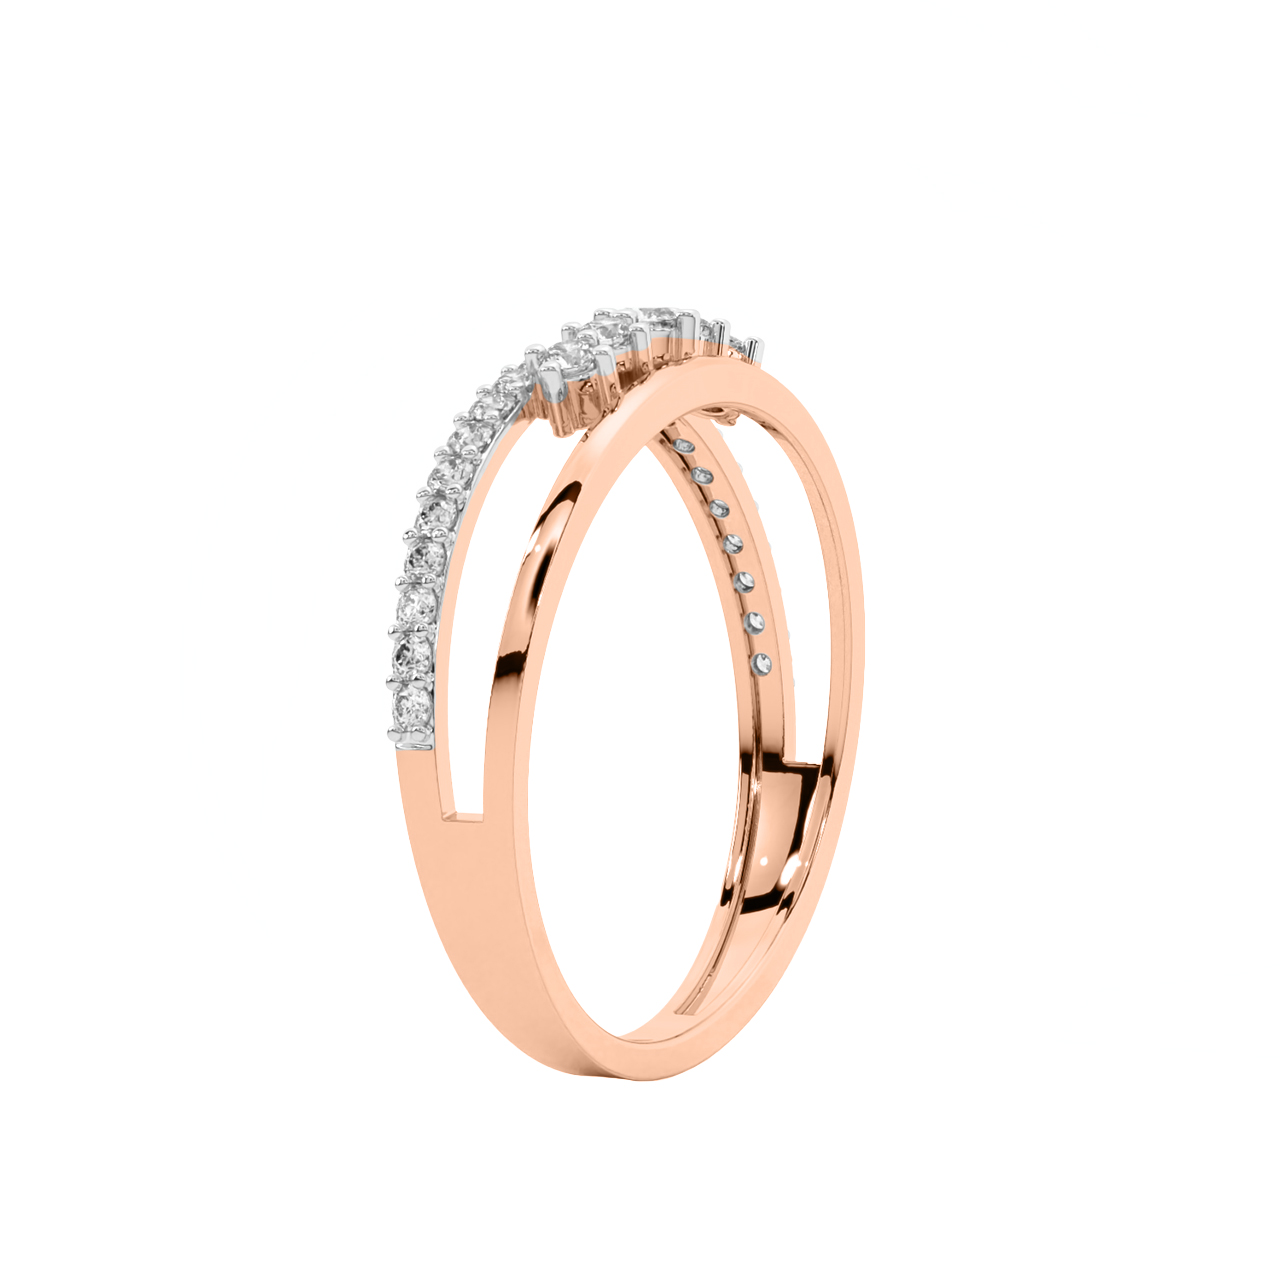 Micha Round Diamond Engagement Ring